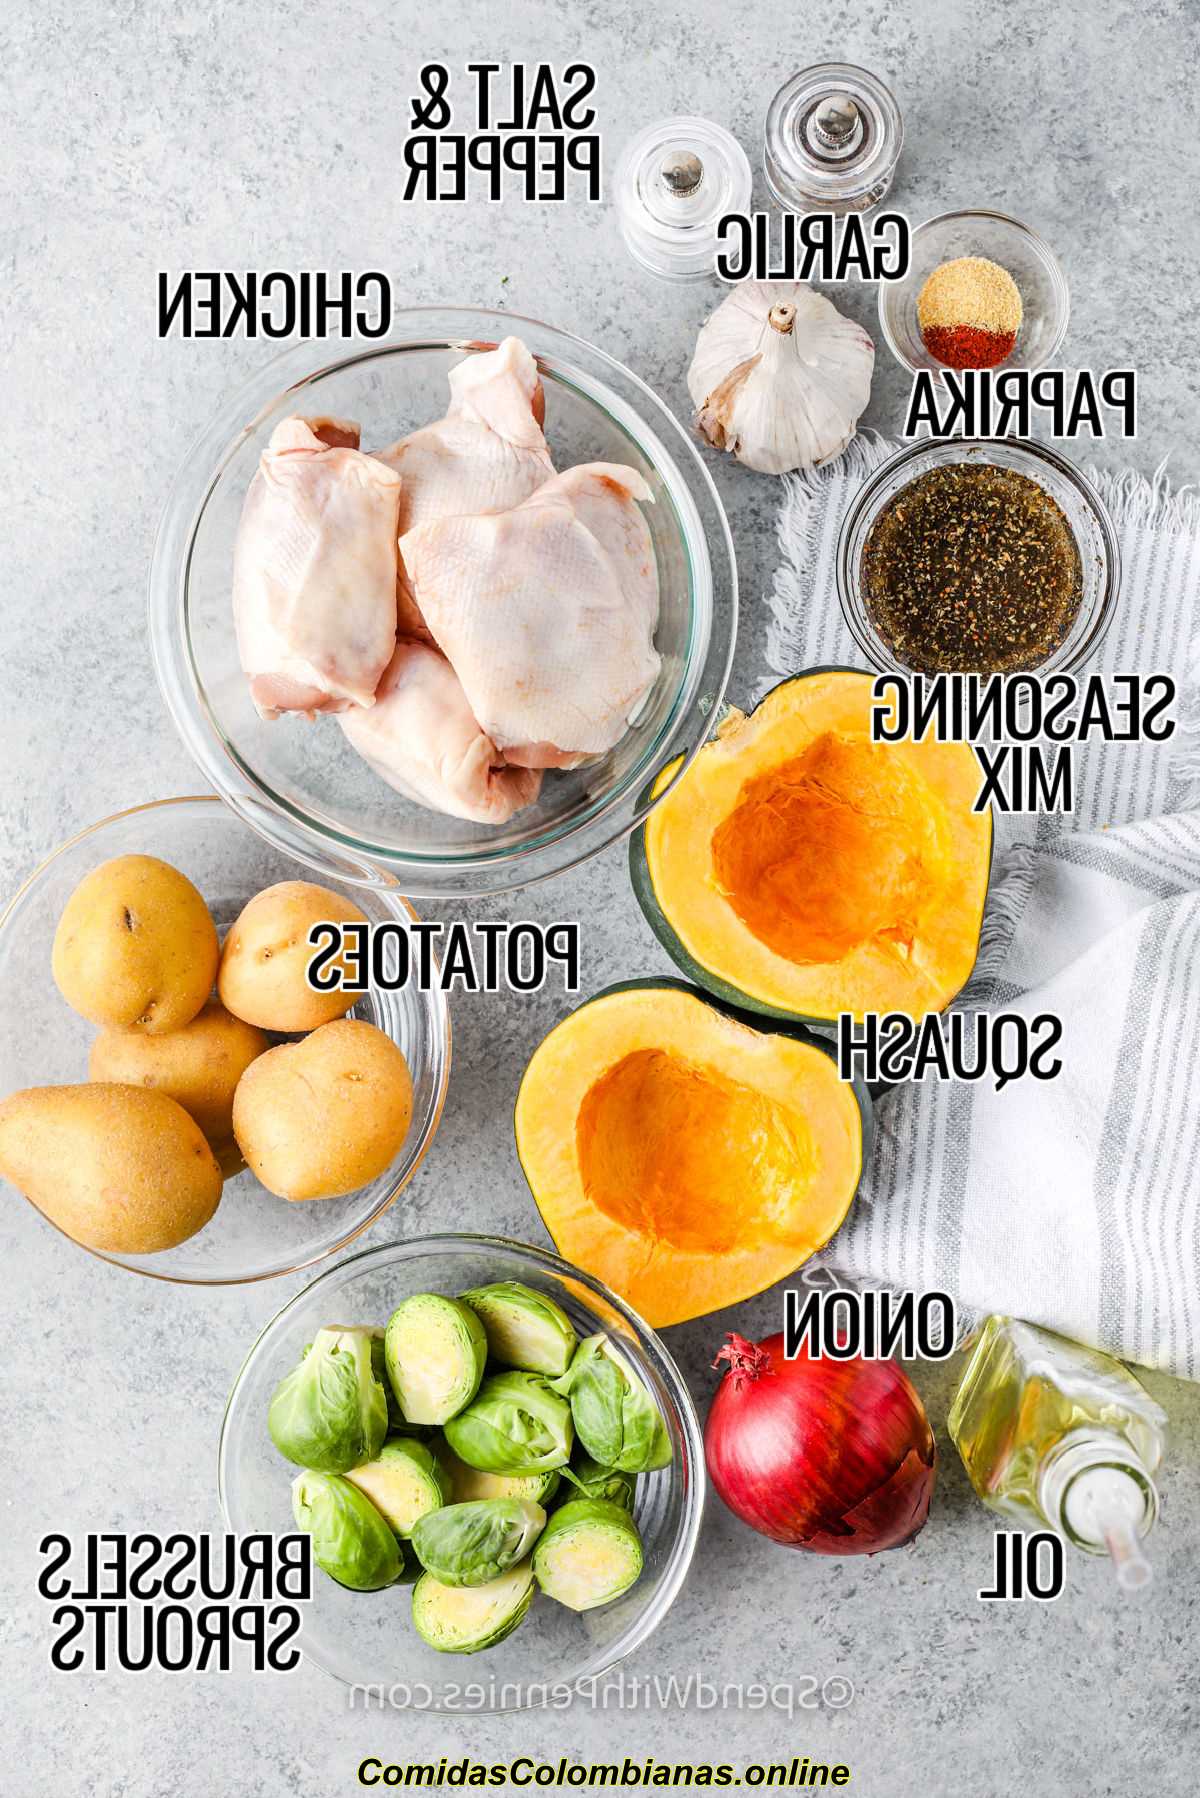 Sheet Pan Chicken and Veggies ingredientes con etiquetas